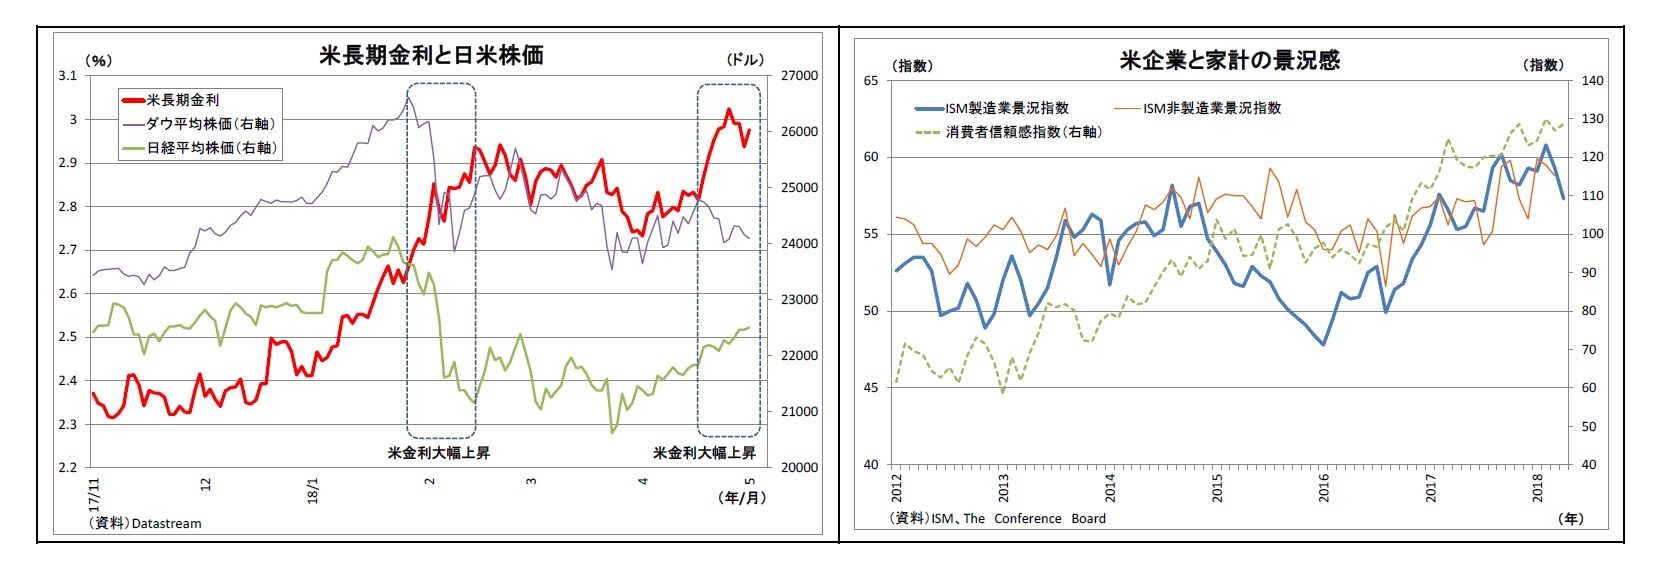 米長期金利と日米株価/米企業と家計の景況感